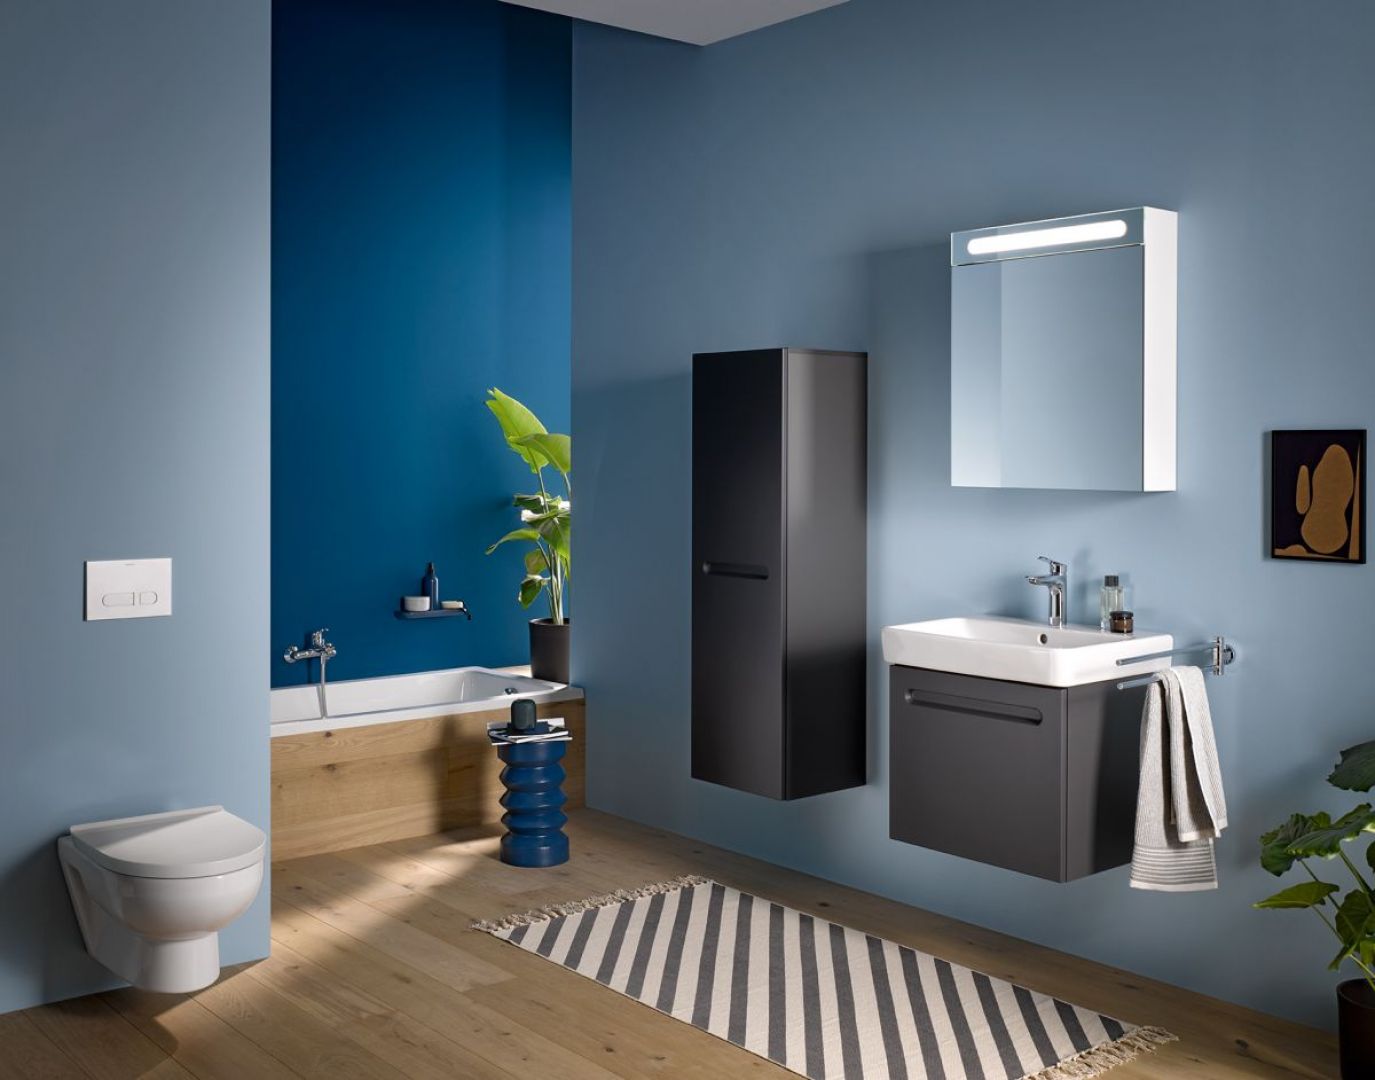 Minimalistyczny design umywalki i pasujących mebli łazienkowych podkreśla wyrazistość i nowoczesność serii Duravit No.1. Fot. Duravit